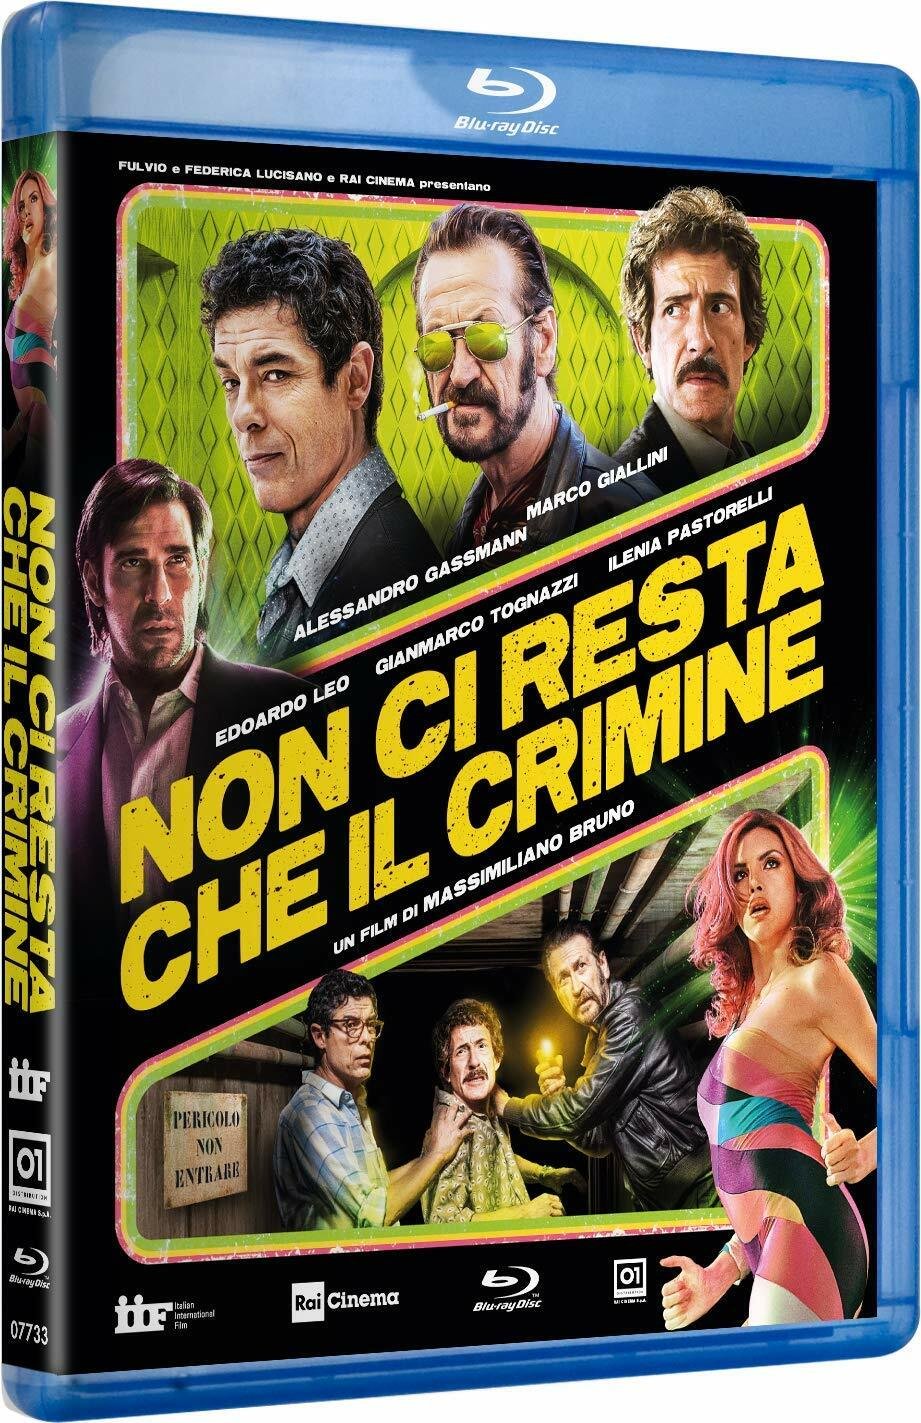 Il cast nella copertina del cofanetto Blu-ray di Non ci resta che il crimine